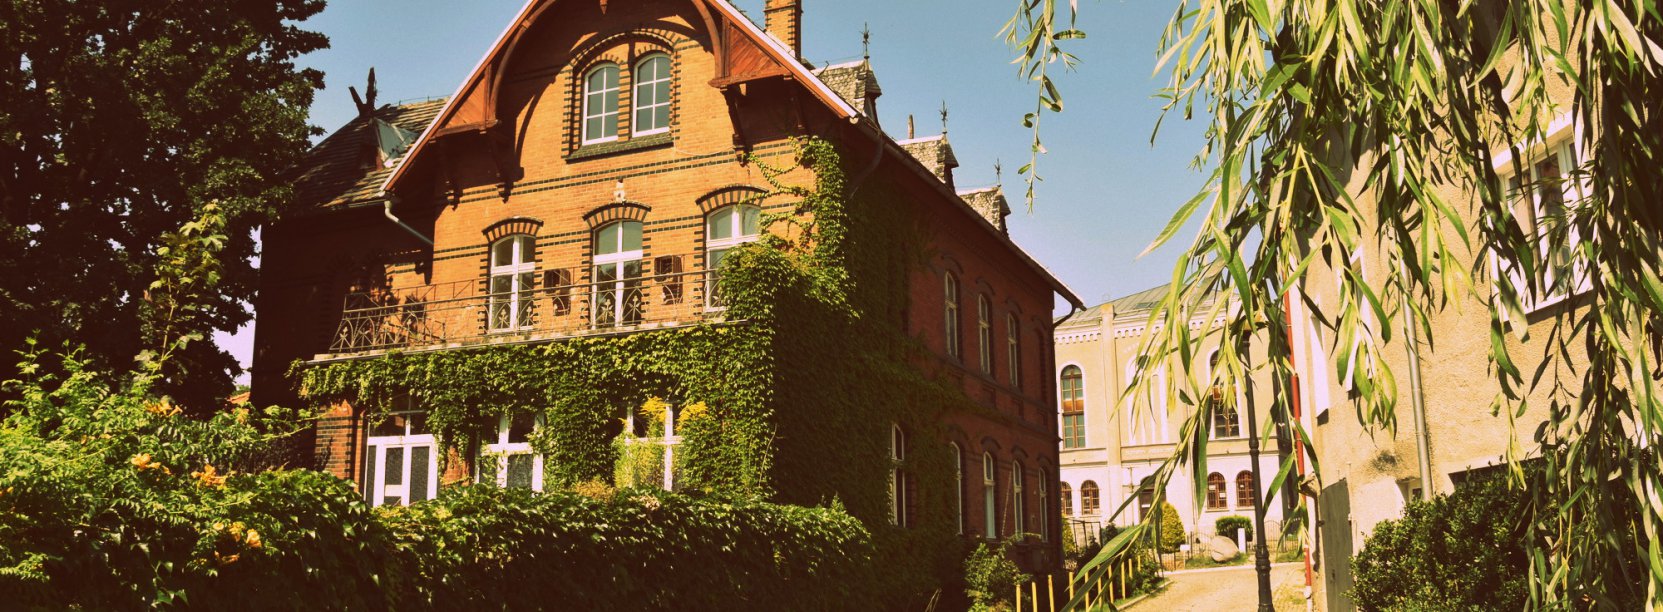 Budynek z czerwonej cegły otoczony zielenią